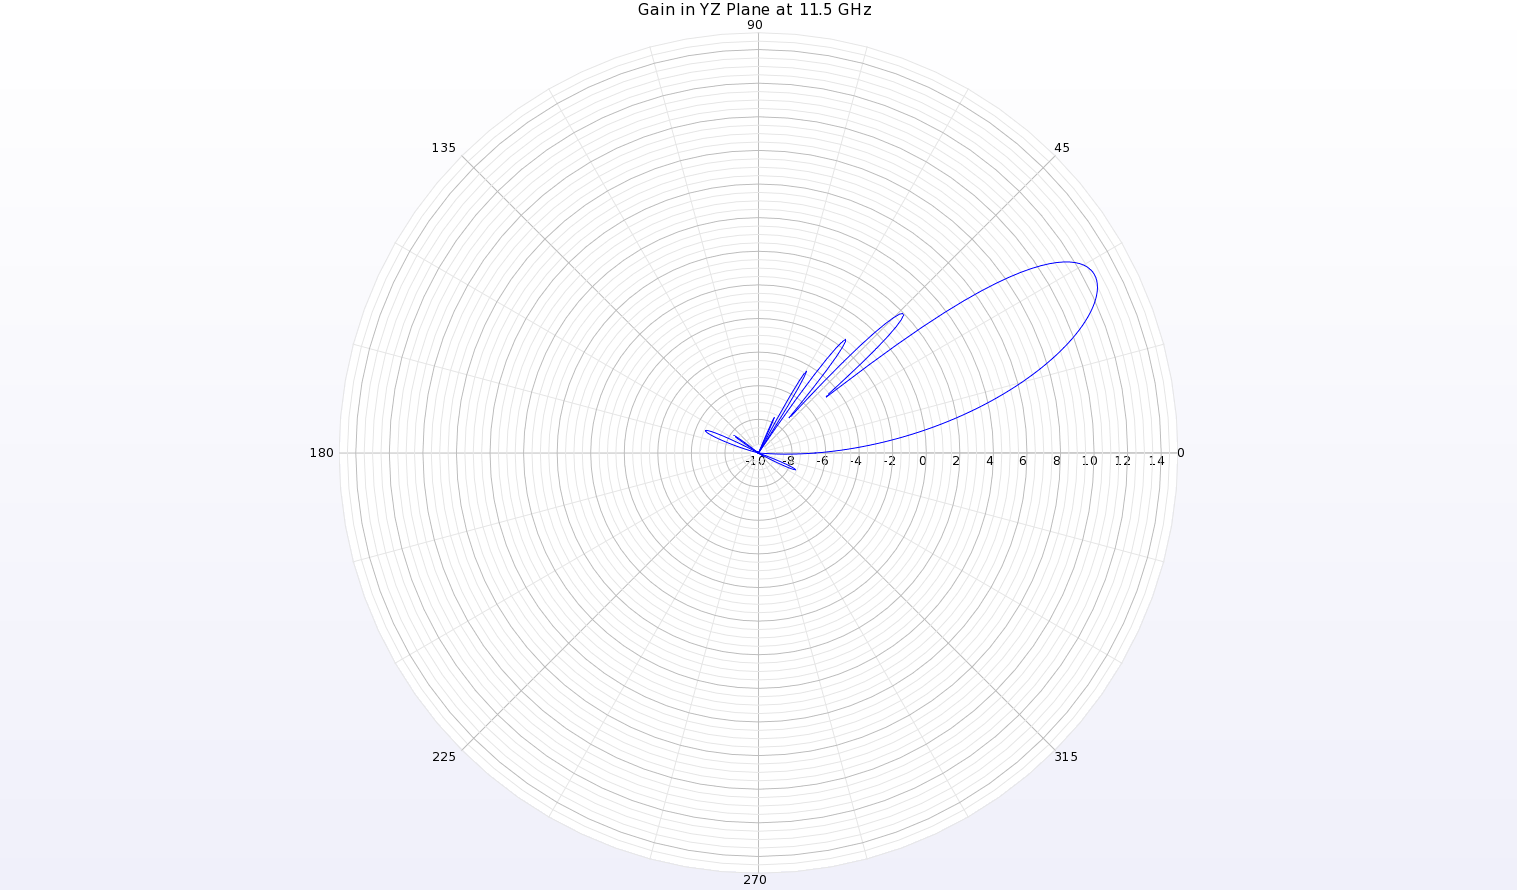 图 13：天线 YZ 平面上 11.5 千兆赫的增益模式极坐标图显示，θ=28 度处的波束峰值增益为 12.7 dBi。